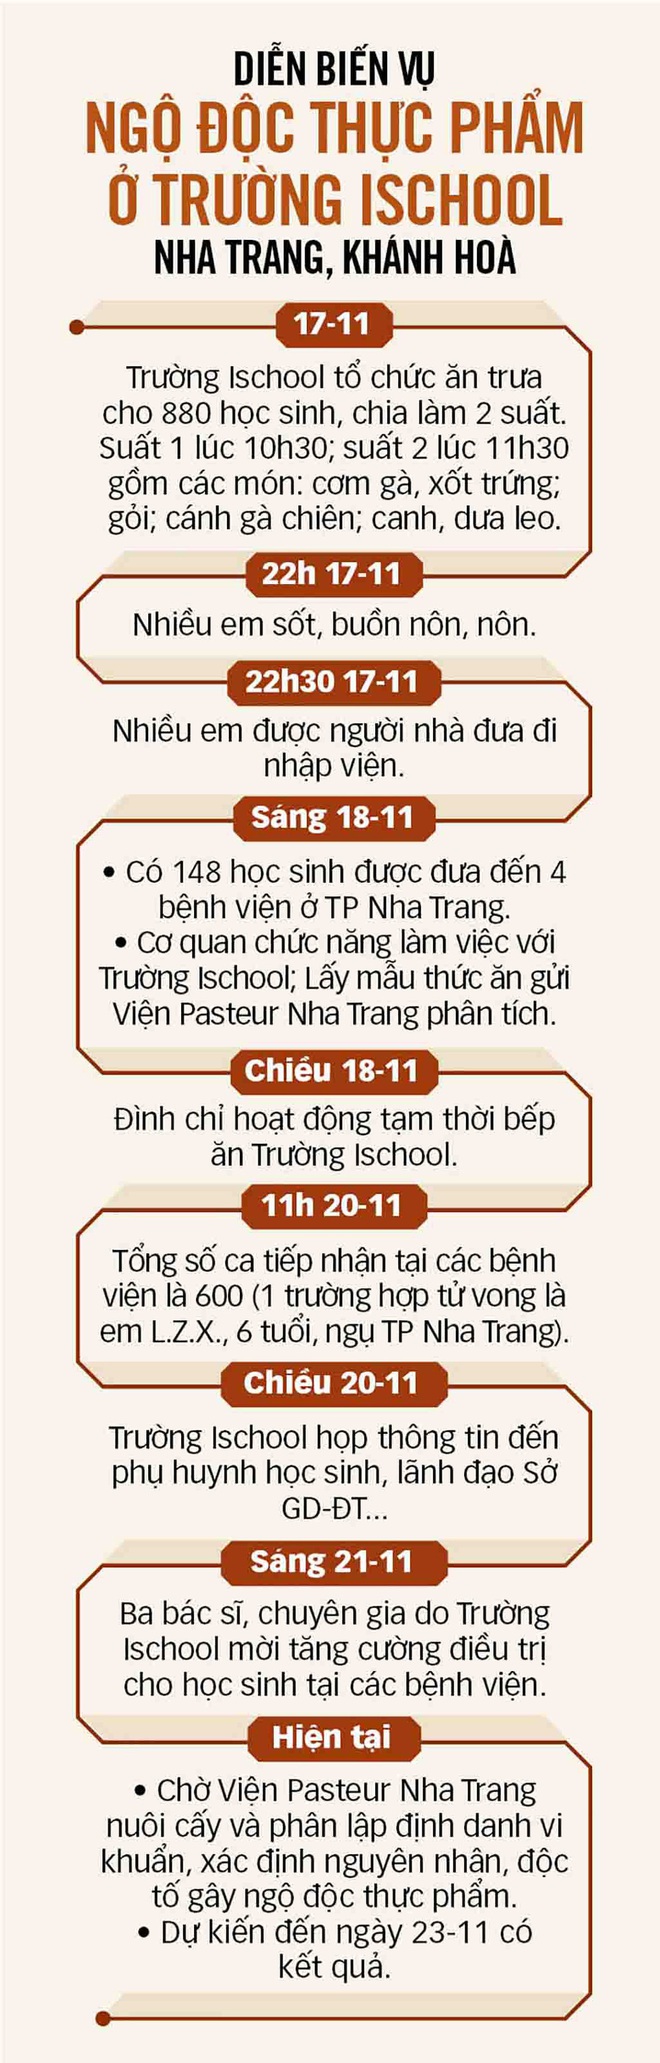 Vụ học sinh ngộ độc tập thể ở Nha Trang: Dự kiến ngày mai 23-11 có kết quả phân tích mẫu thức ăn - Ảnh 3.